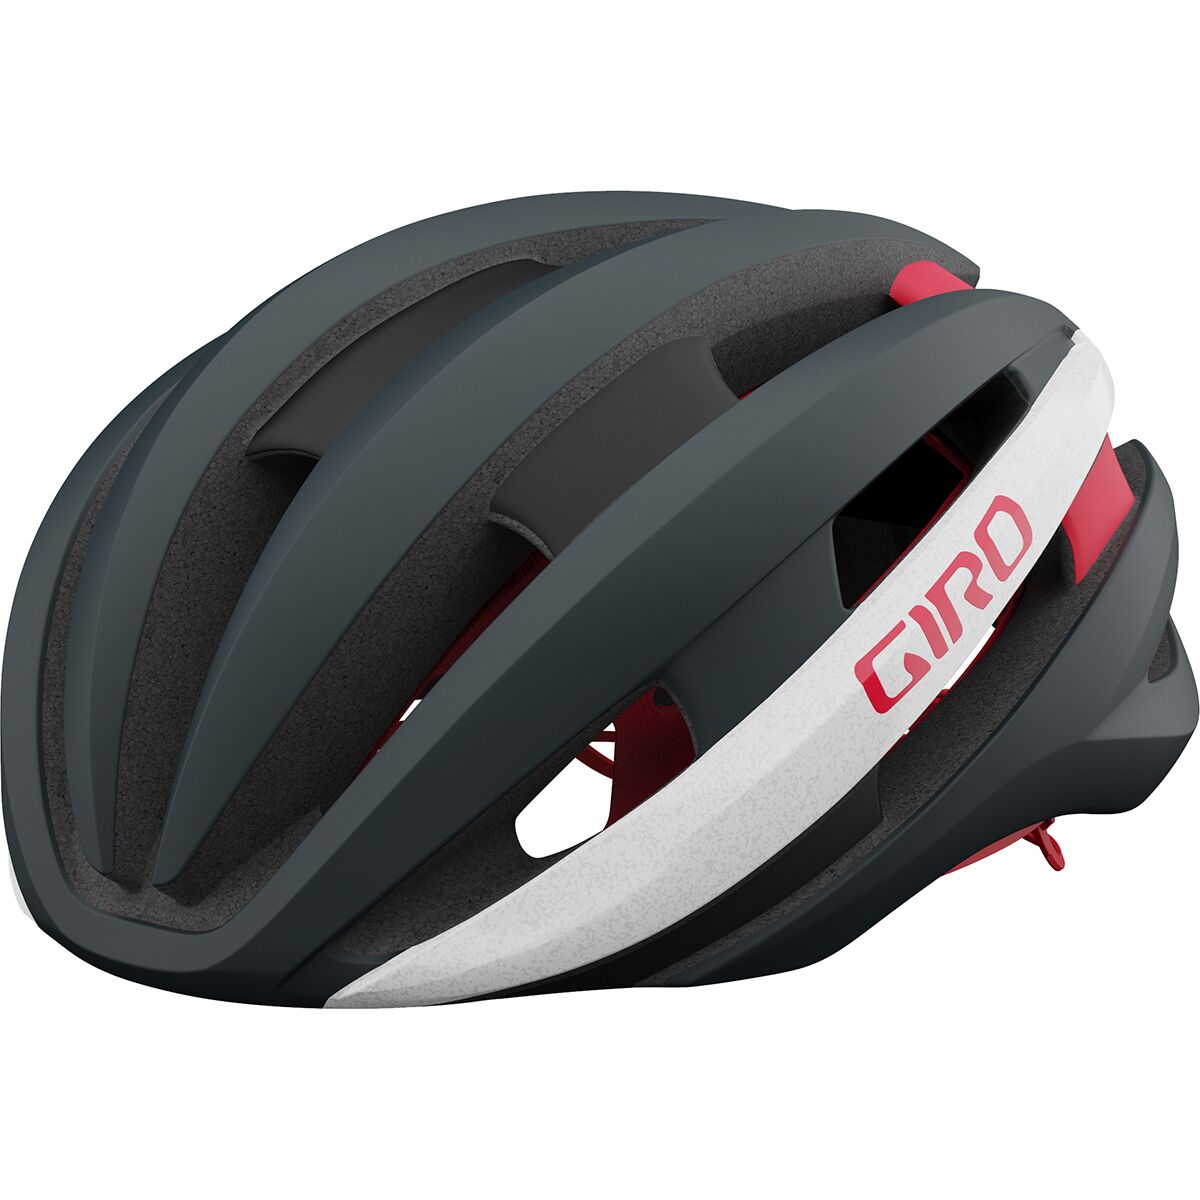 Giro Synthe Mips II Helmet...